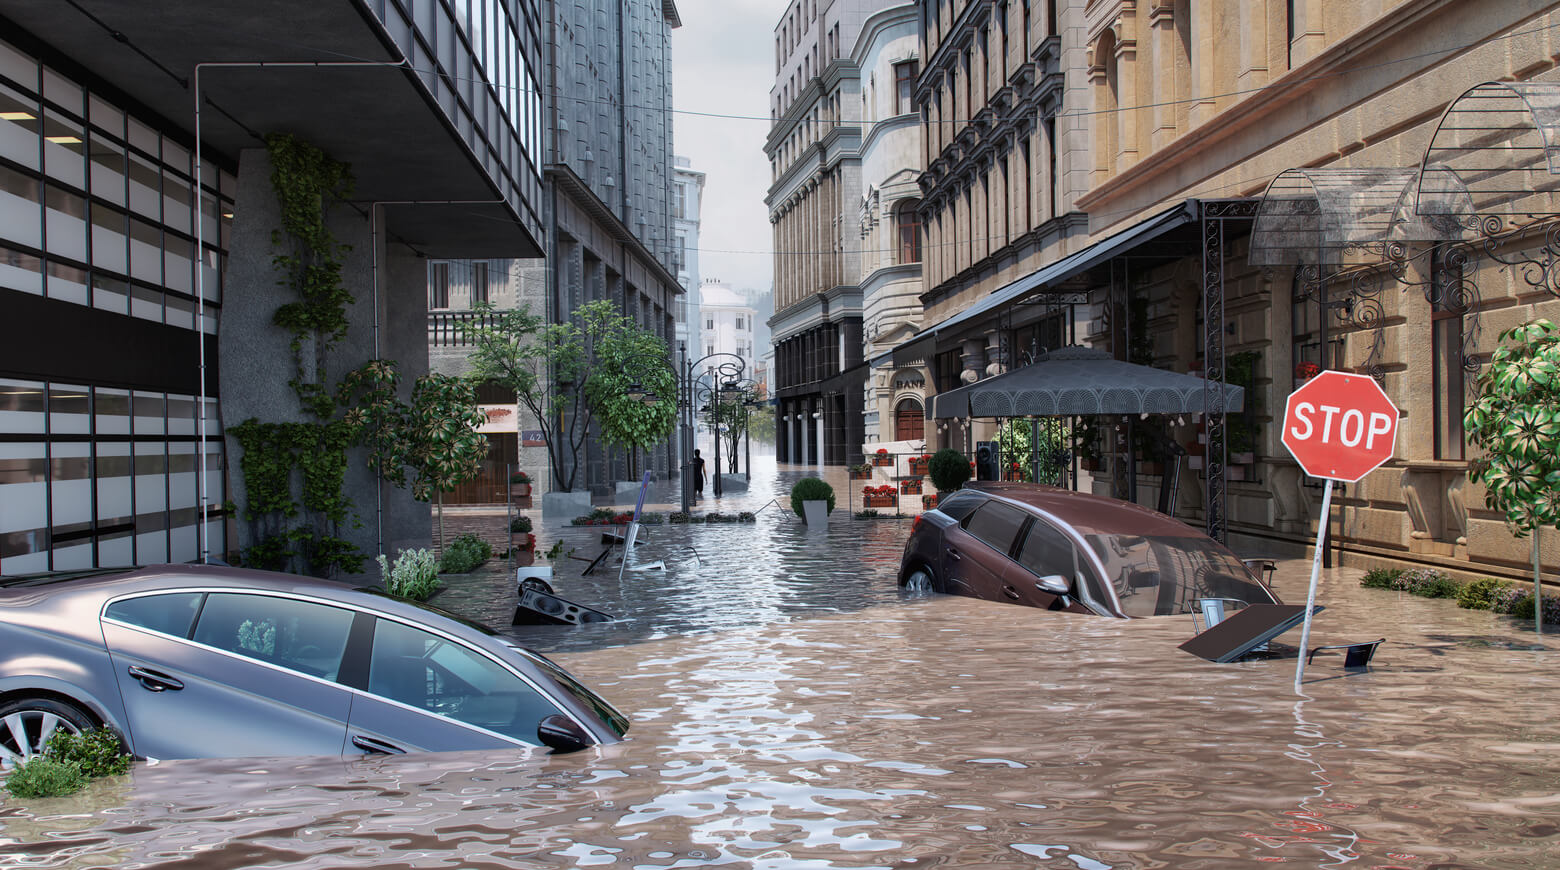 Ученые предупредили, что глобальное потепление угрожает крупнейшим городам мира наводнениями